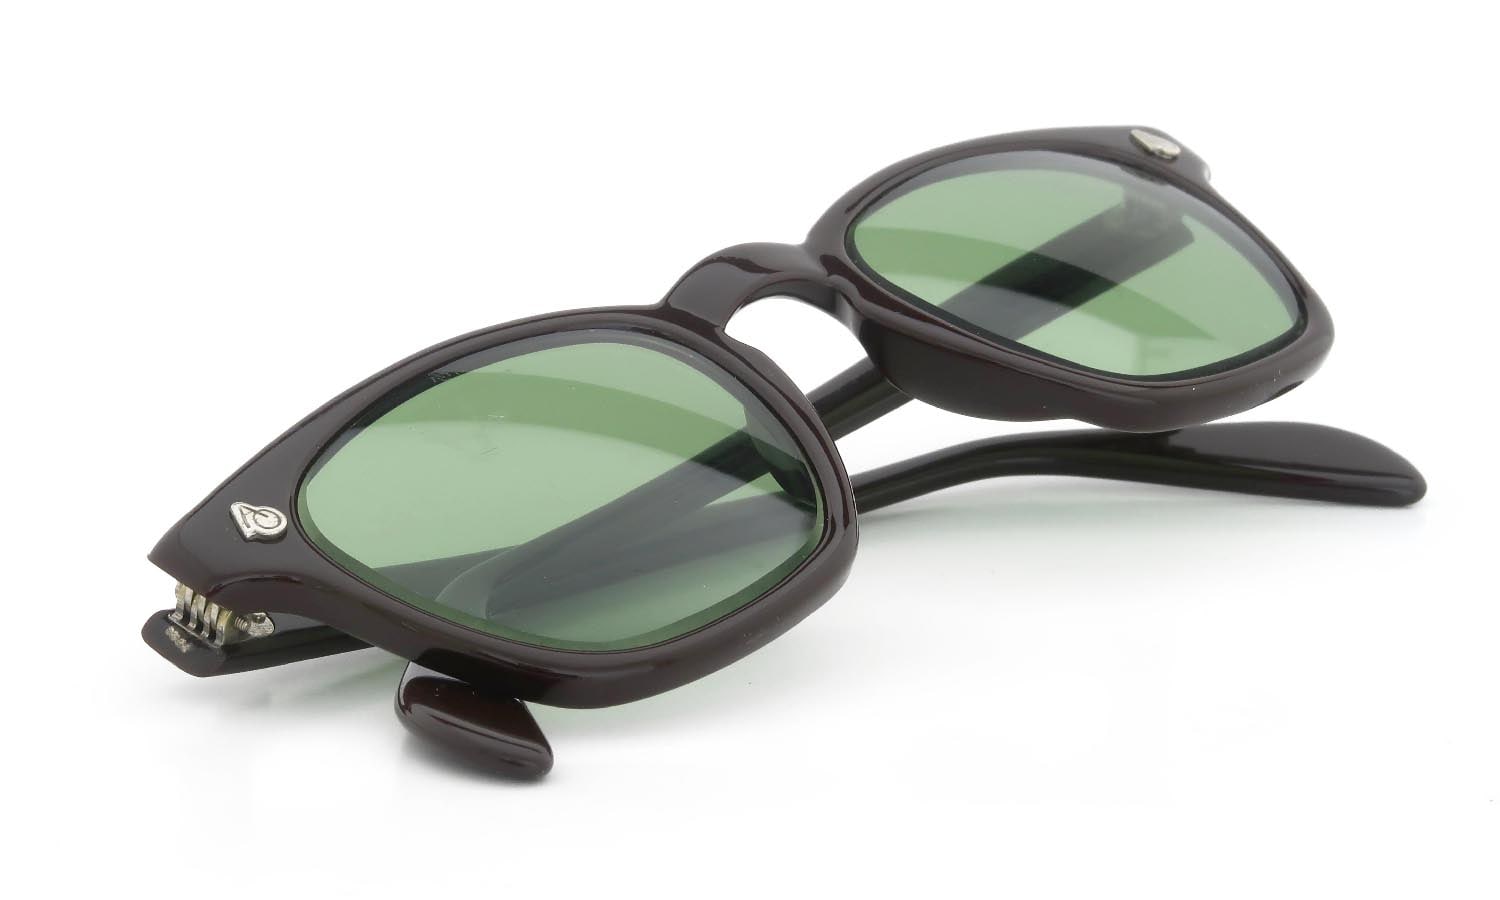 AO vintage Sunglasses AO鋲 Square Chocolate 46-22 Original-Green-Lens